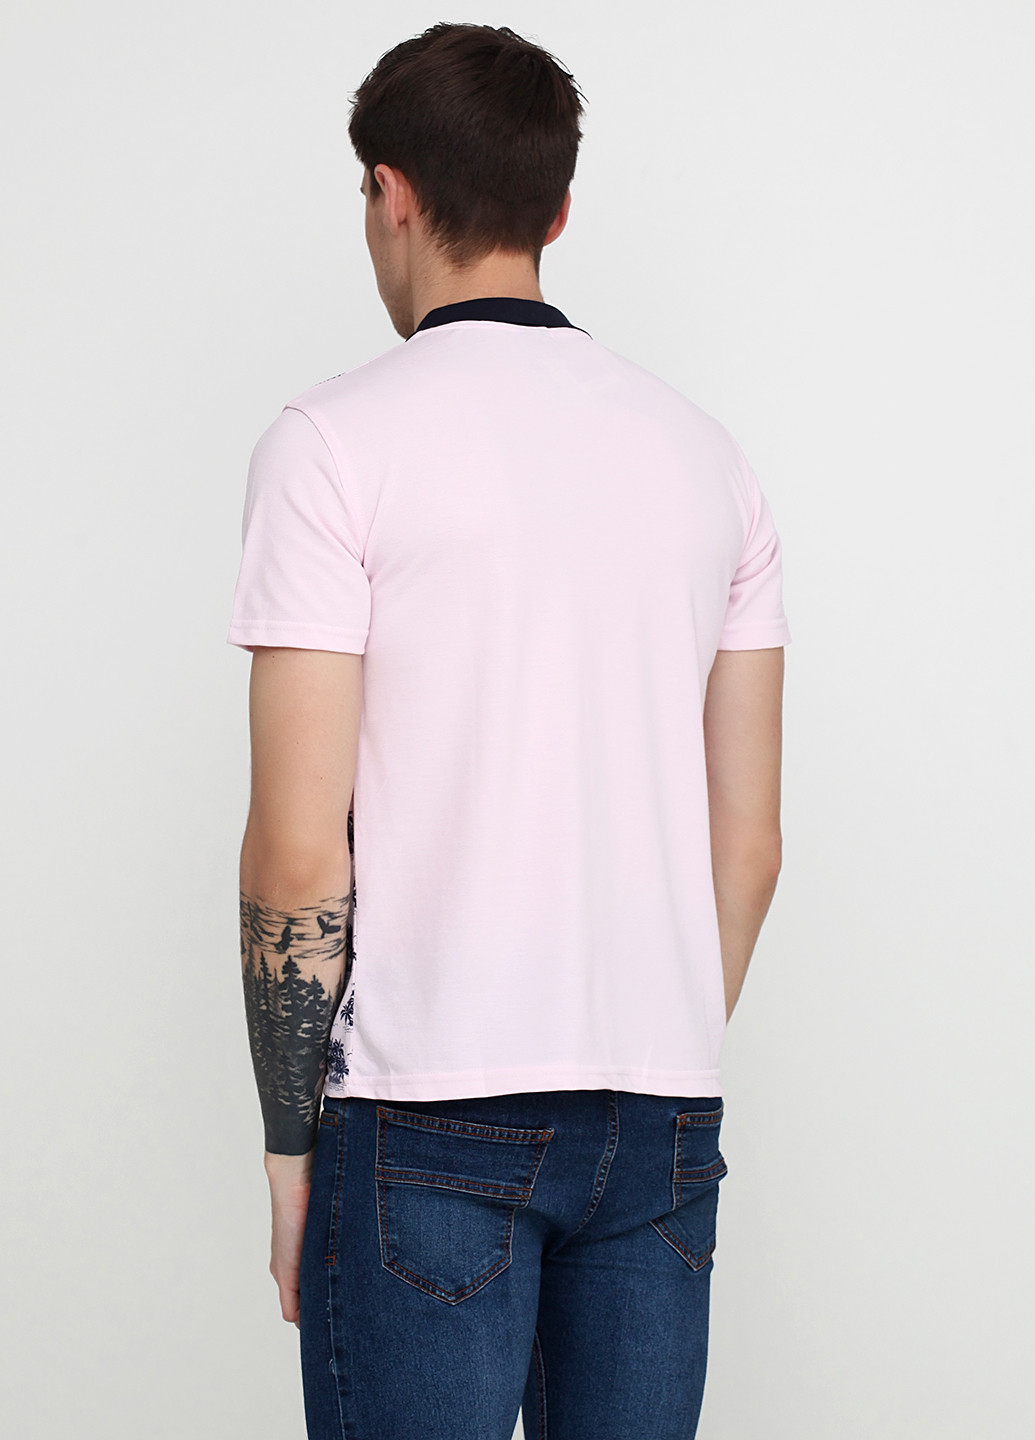 Бледно-розовая футболка-поло для мужчин West Wint с рисунком